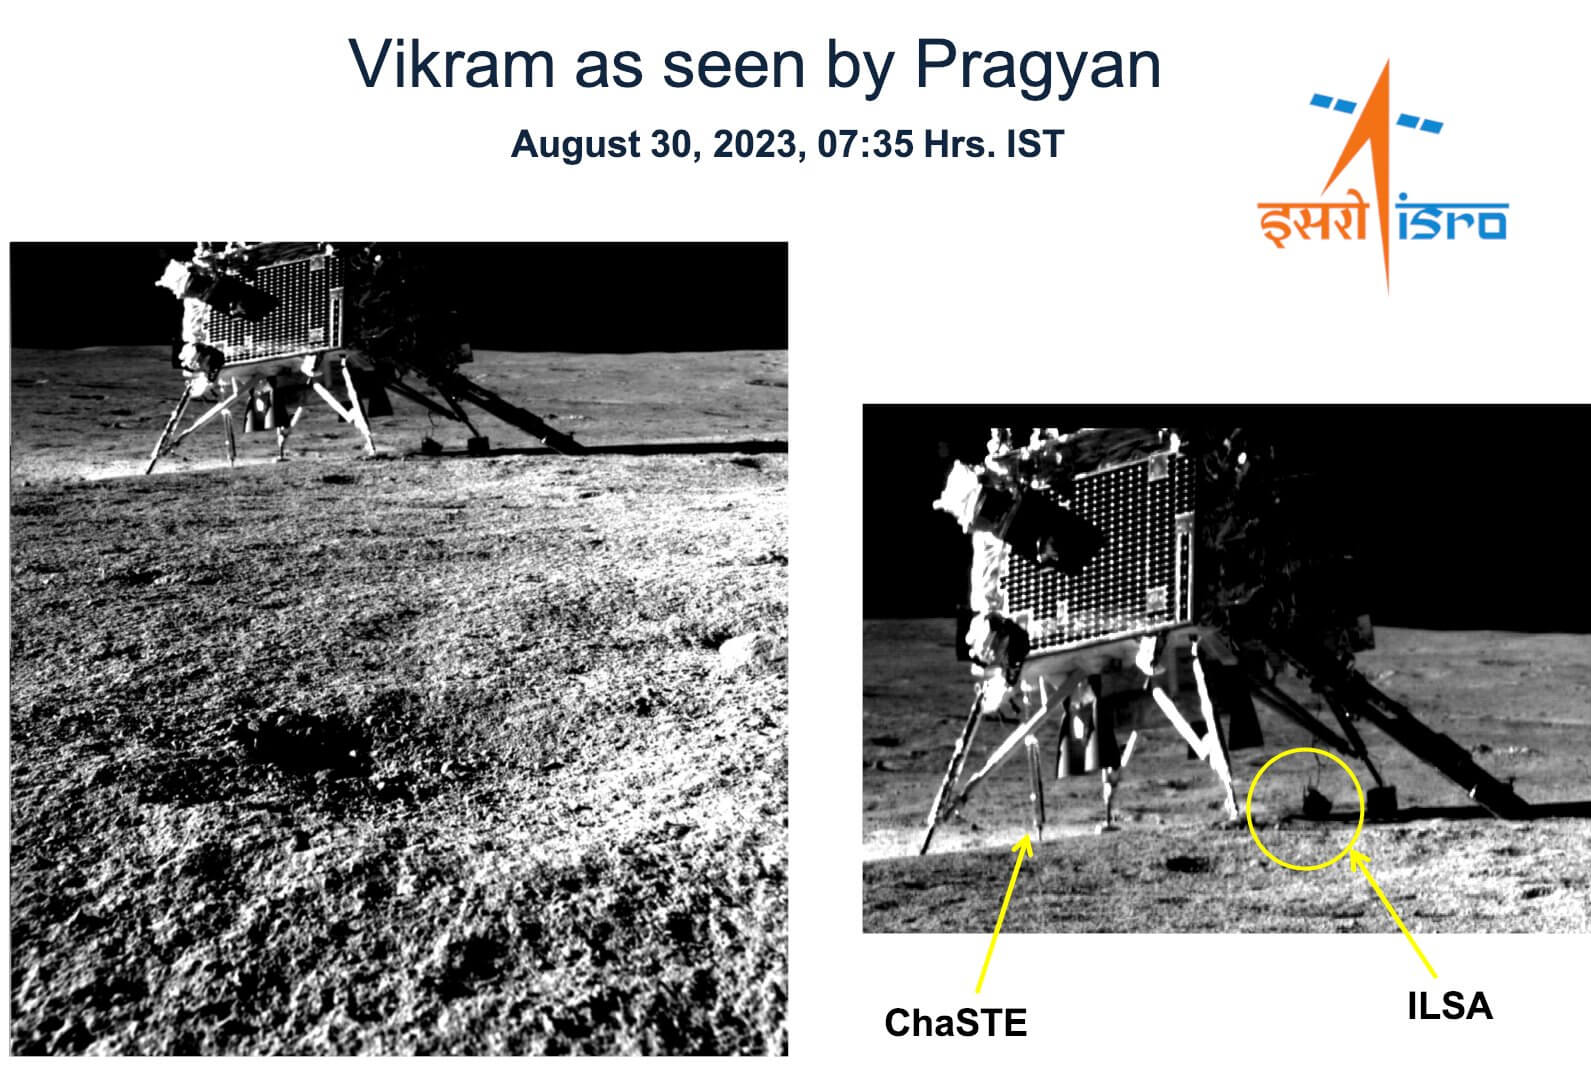 הנחתת ההודית וירקאם כפי שצולמה מהרכב הרובוטי פרגיין. צילום סוכנות החלל ההודית ISRO